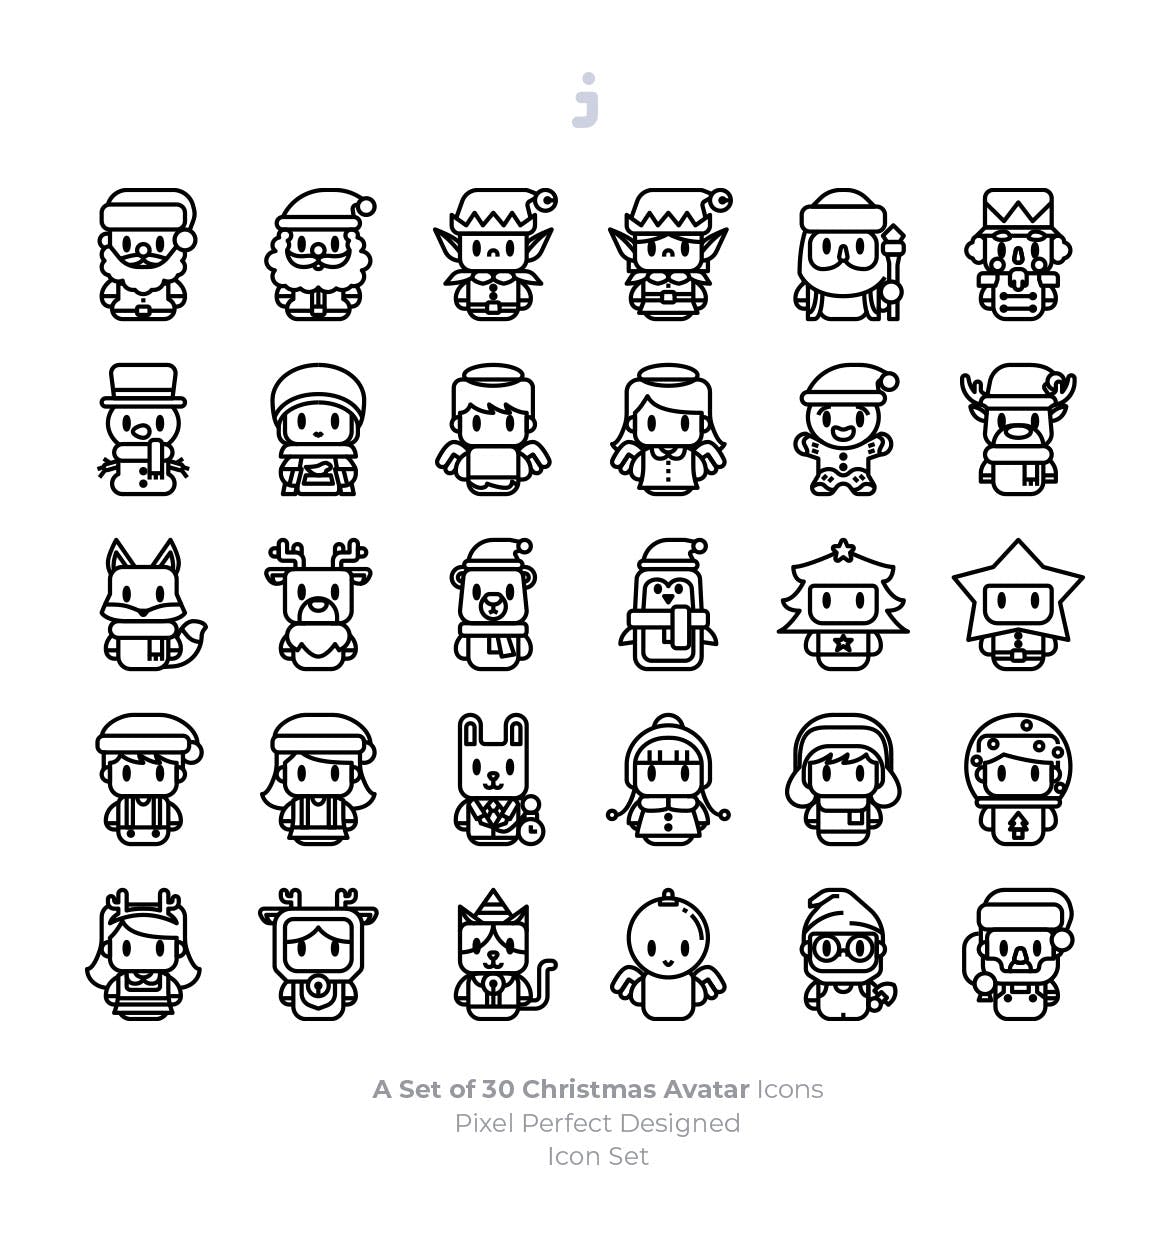 30枚圣诞主题人物头像图标素材 30 Christmas Avatar Icons插图(2)